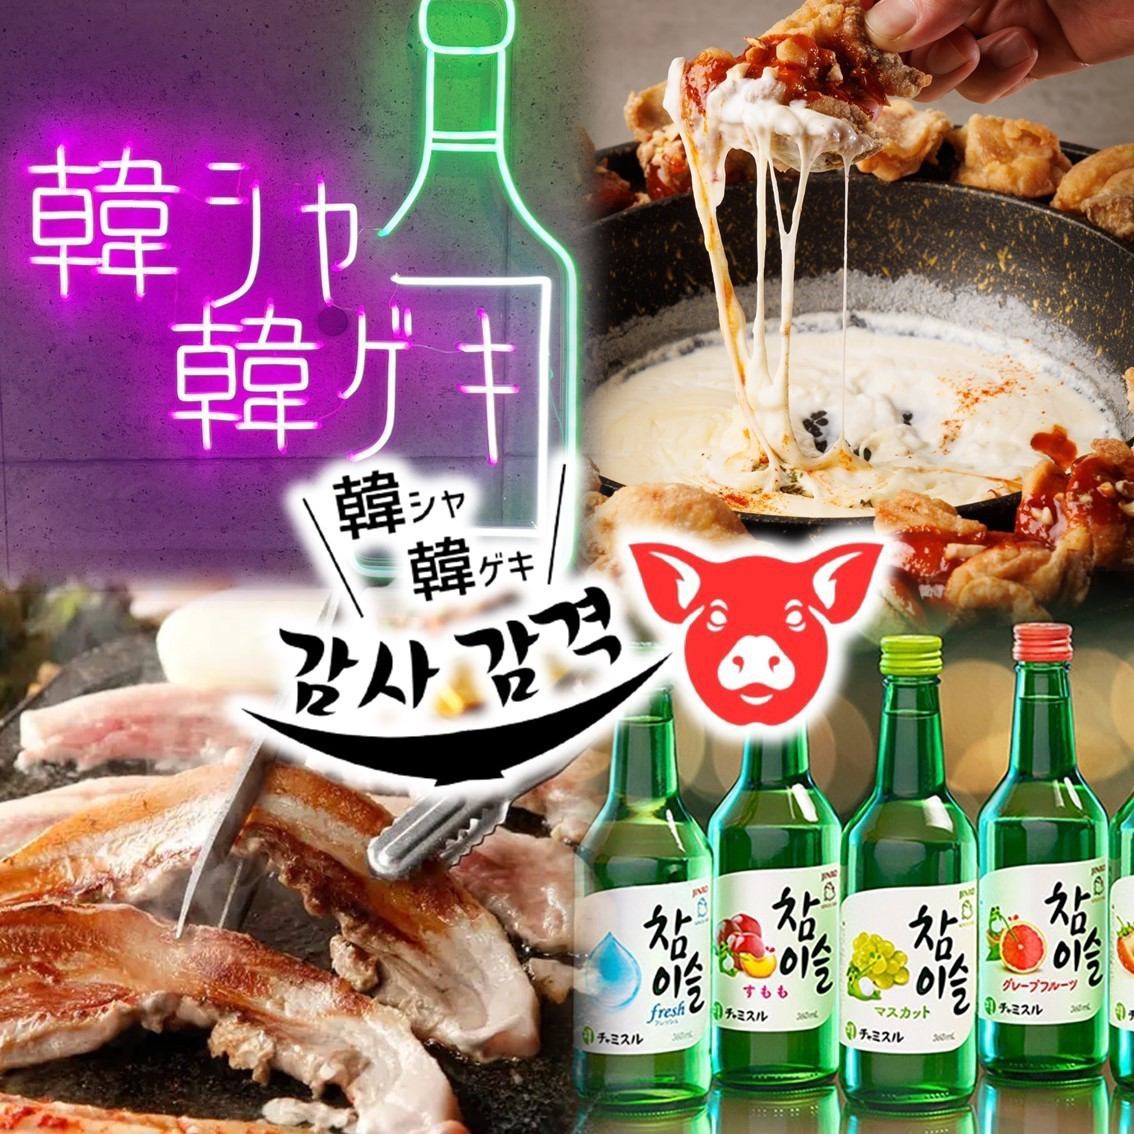 可以享用五花肉、UFO鸡等无限量吃喝的韩国居酒屋在薄野开业了☆